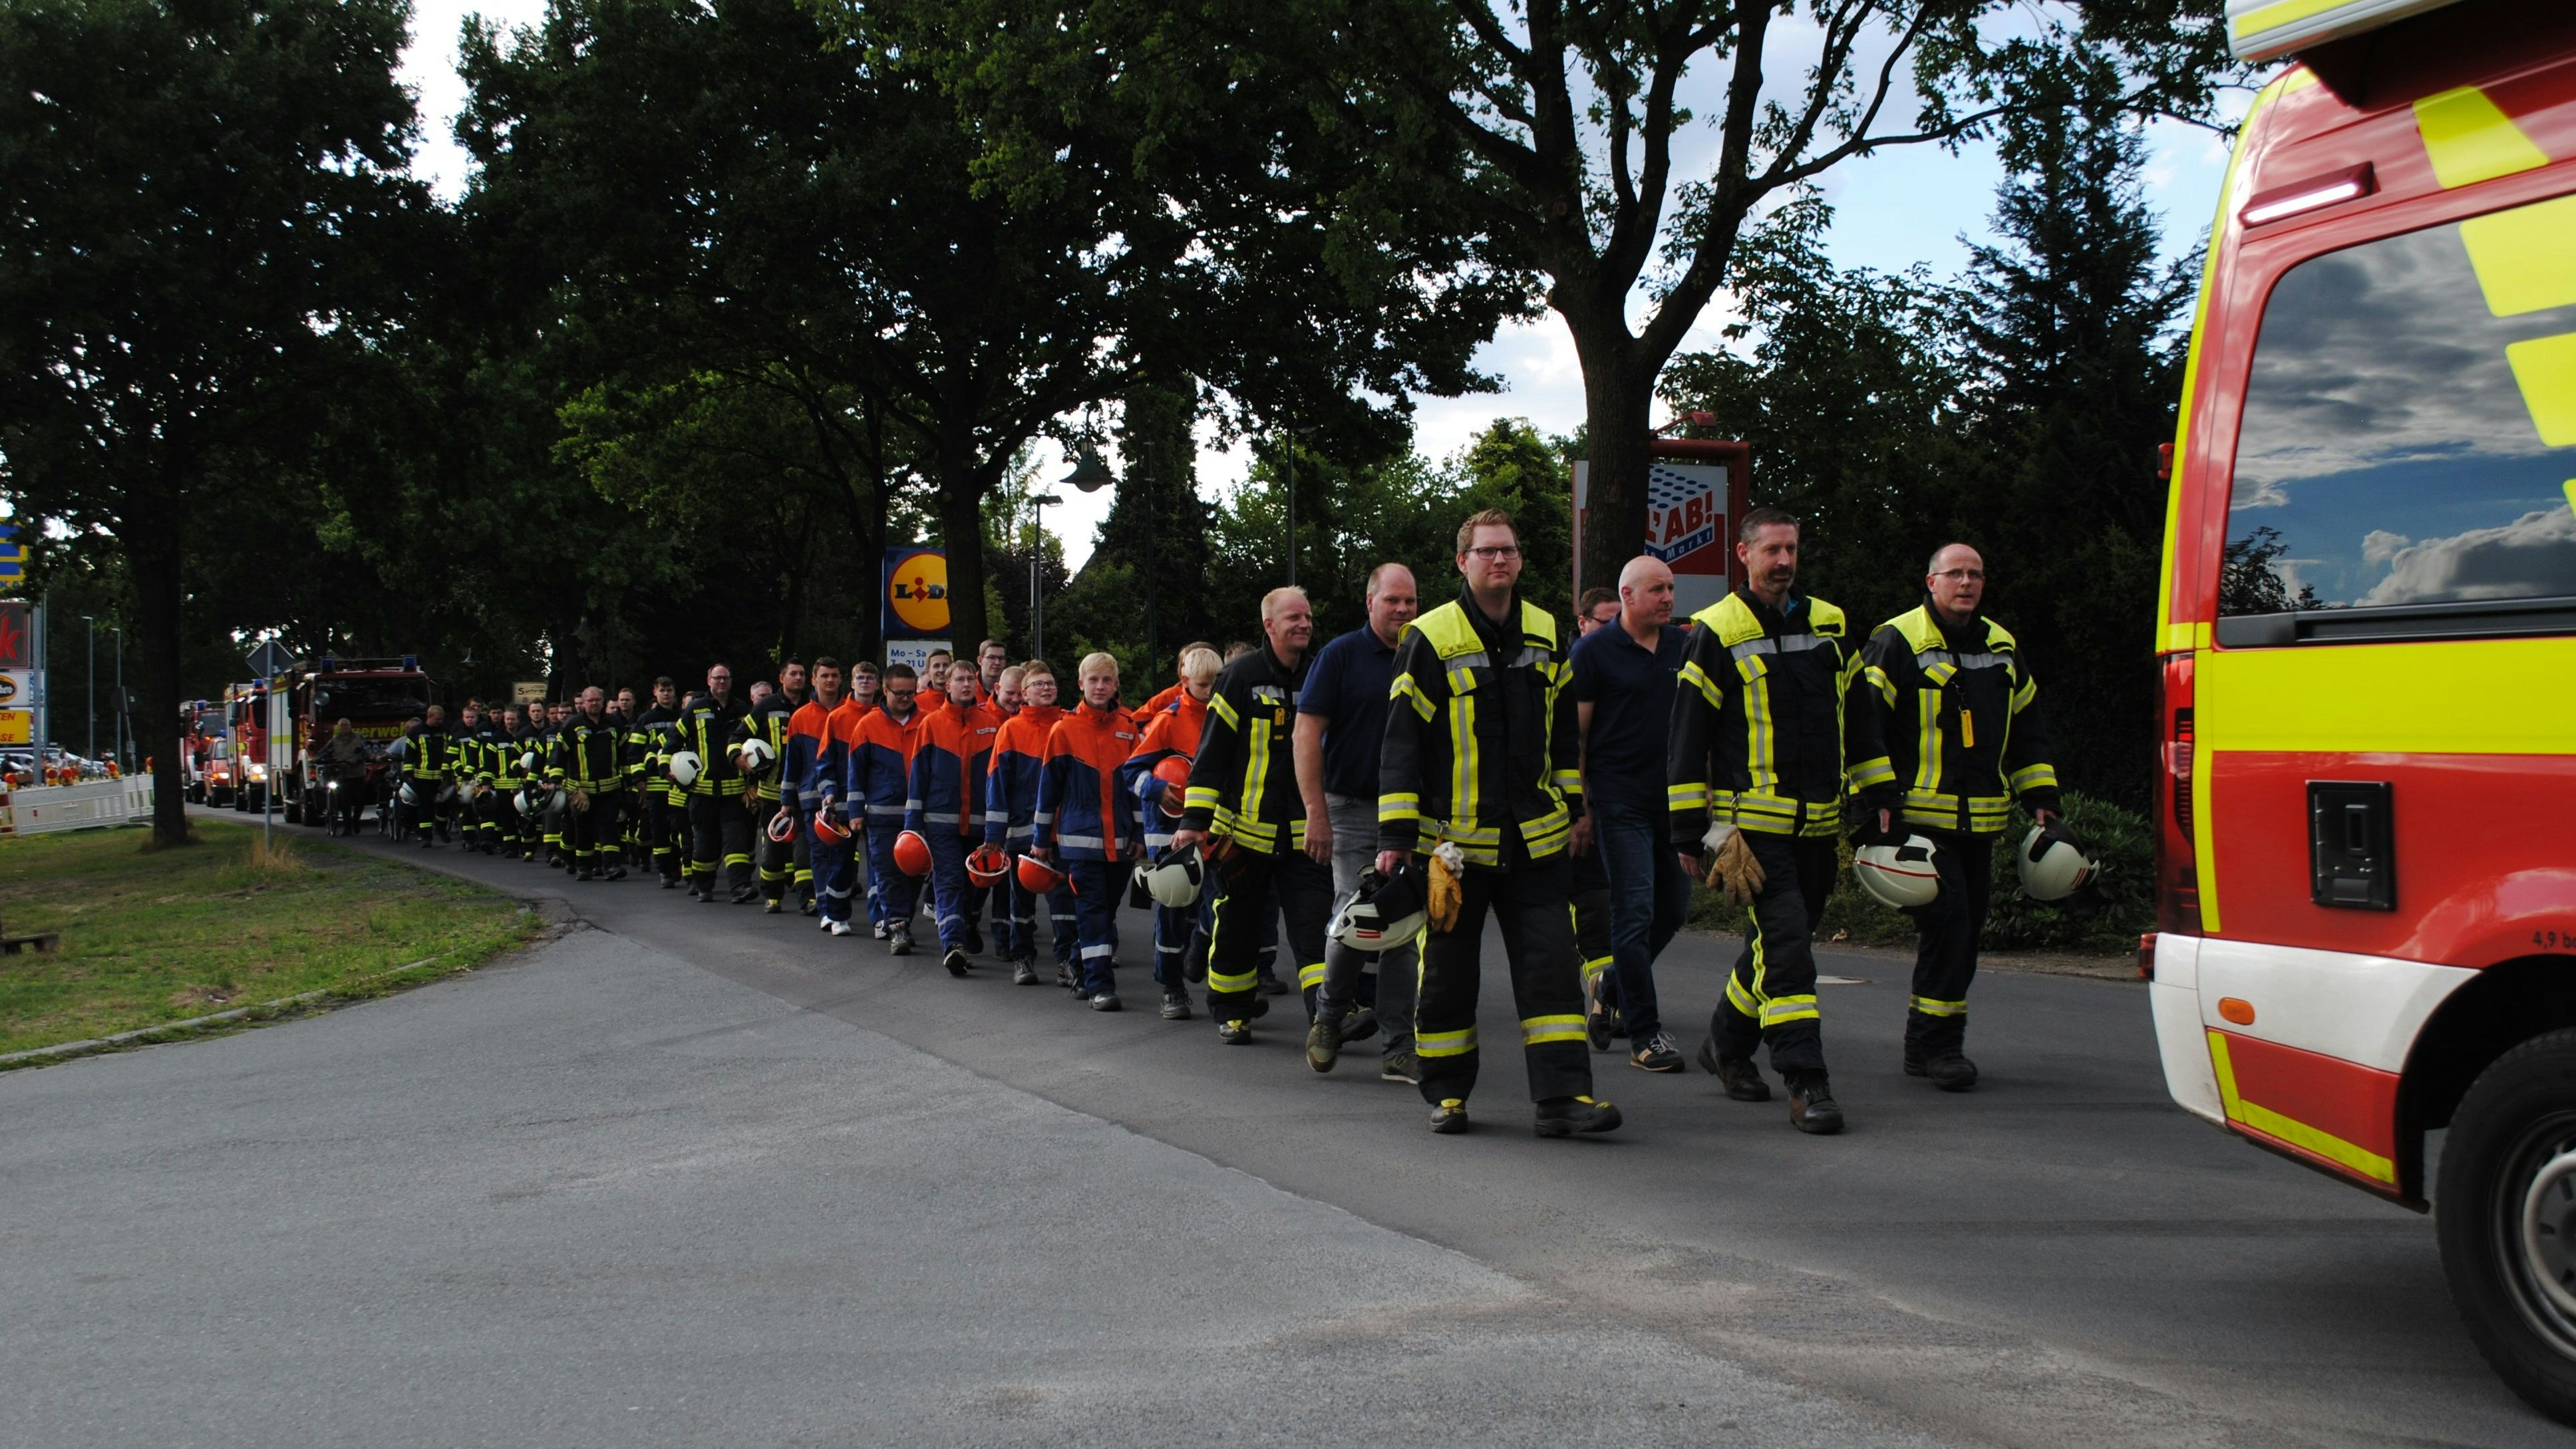 Lange erwartet: Die Mitglieder der Freiwilligen Feuerwehr machten sich am Samstag zu Fuß auf den Weg ins neue Quartier. Foto: Götting